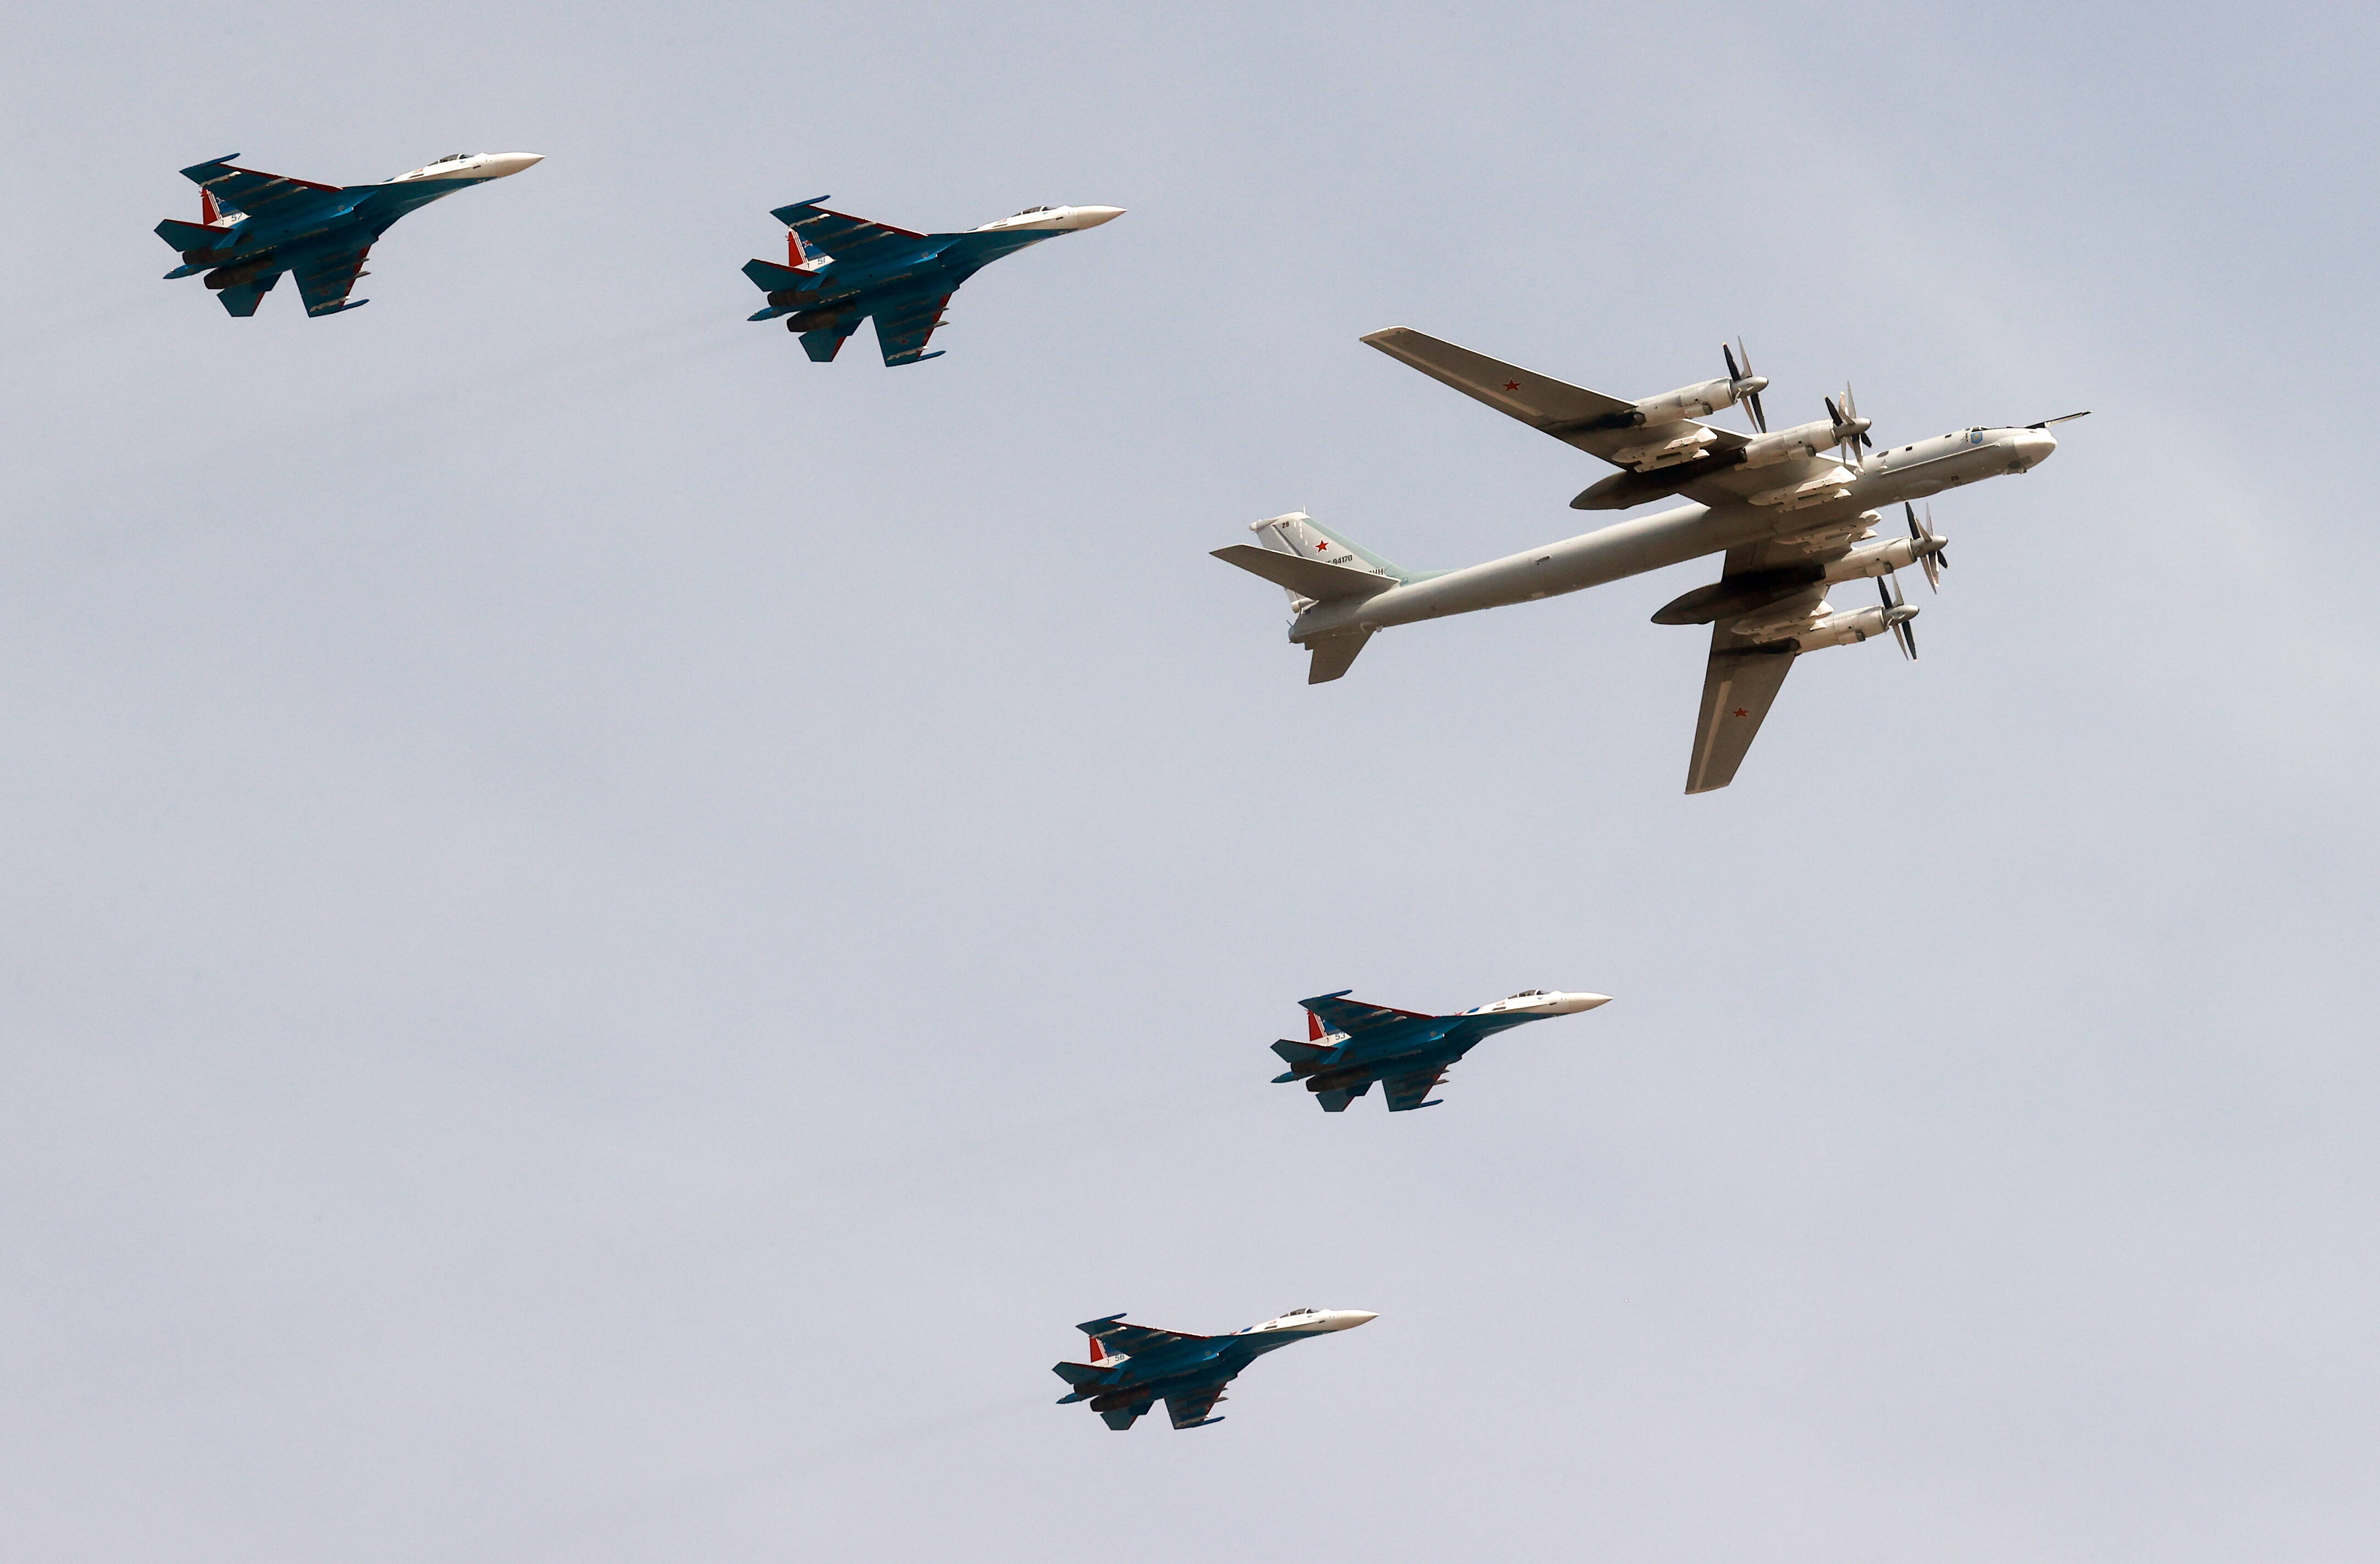 [Video]▶️ Russische Überschallbomber abgeschossen! Russische Jets verschwinden im "Bakhmut-Dreieck"